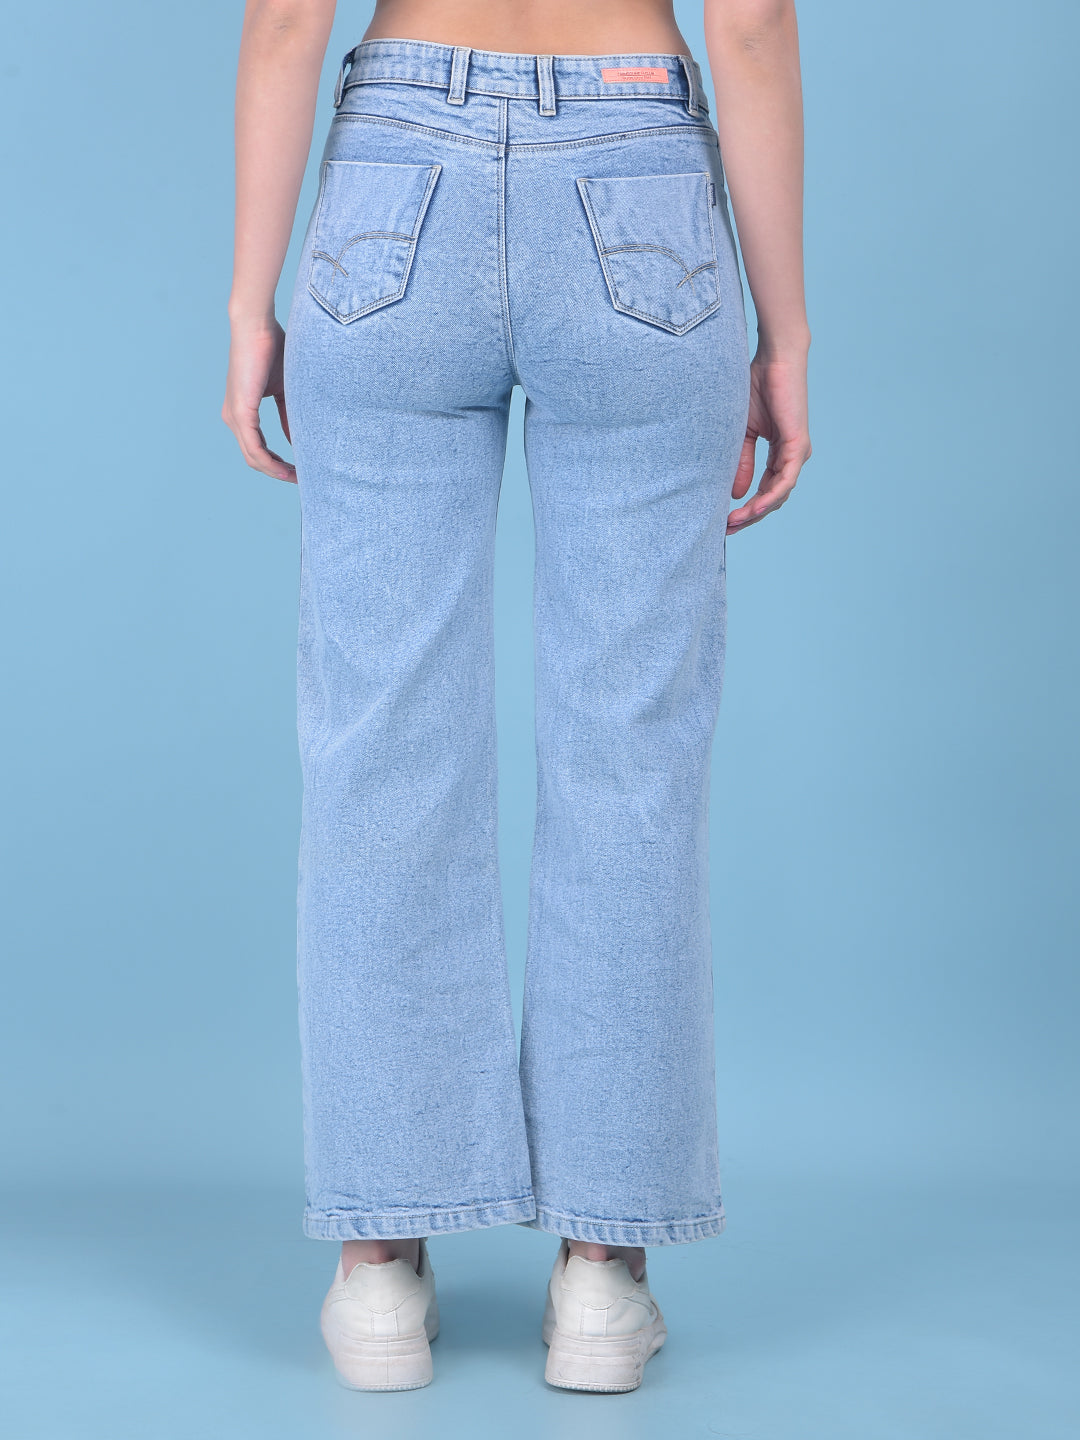 Blue Skinny Jeans-Women Jeans-Crimsoune Club